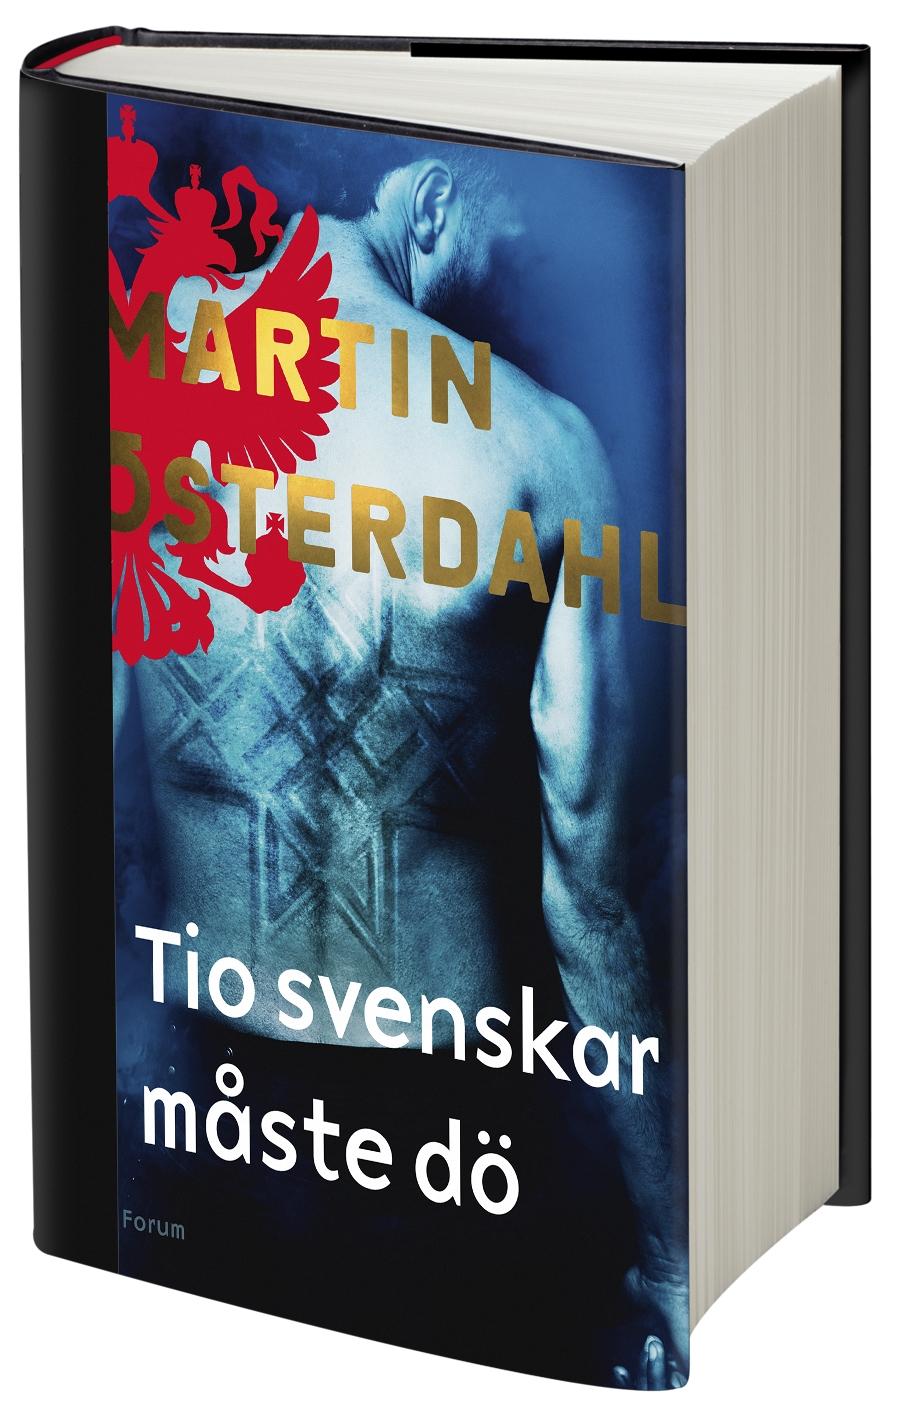 Martin Österdahls nya roman ”Tio svenskar måste dö”